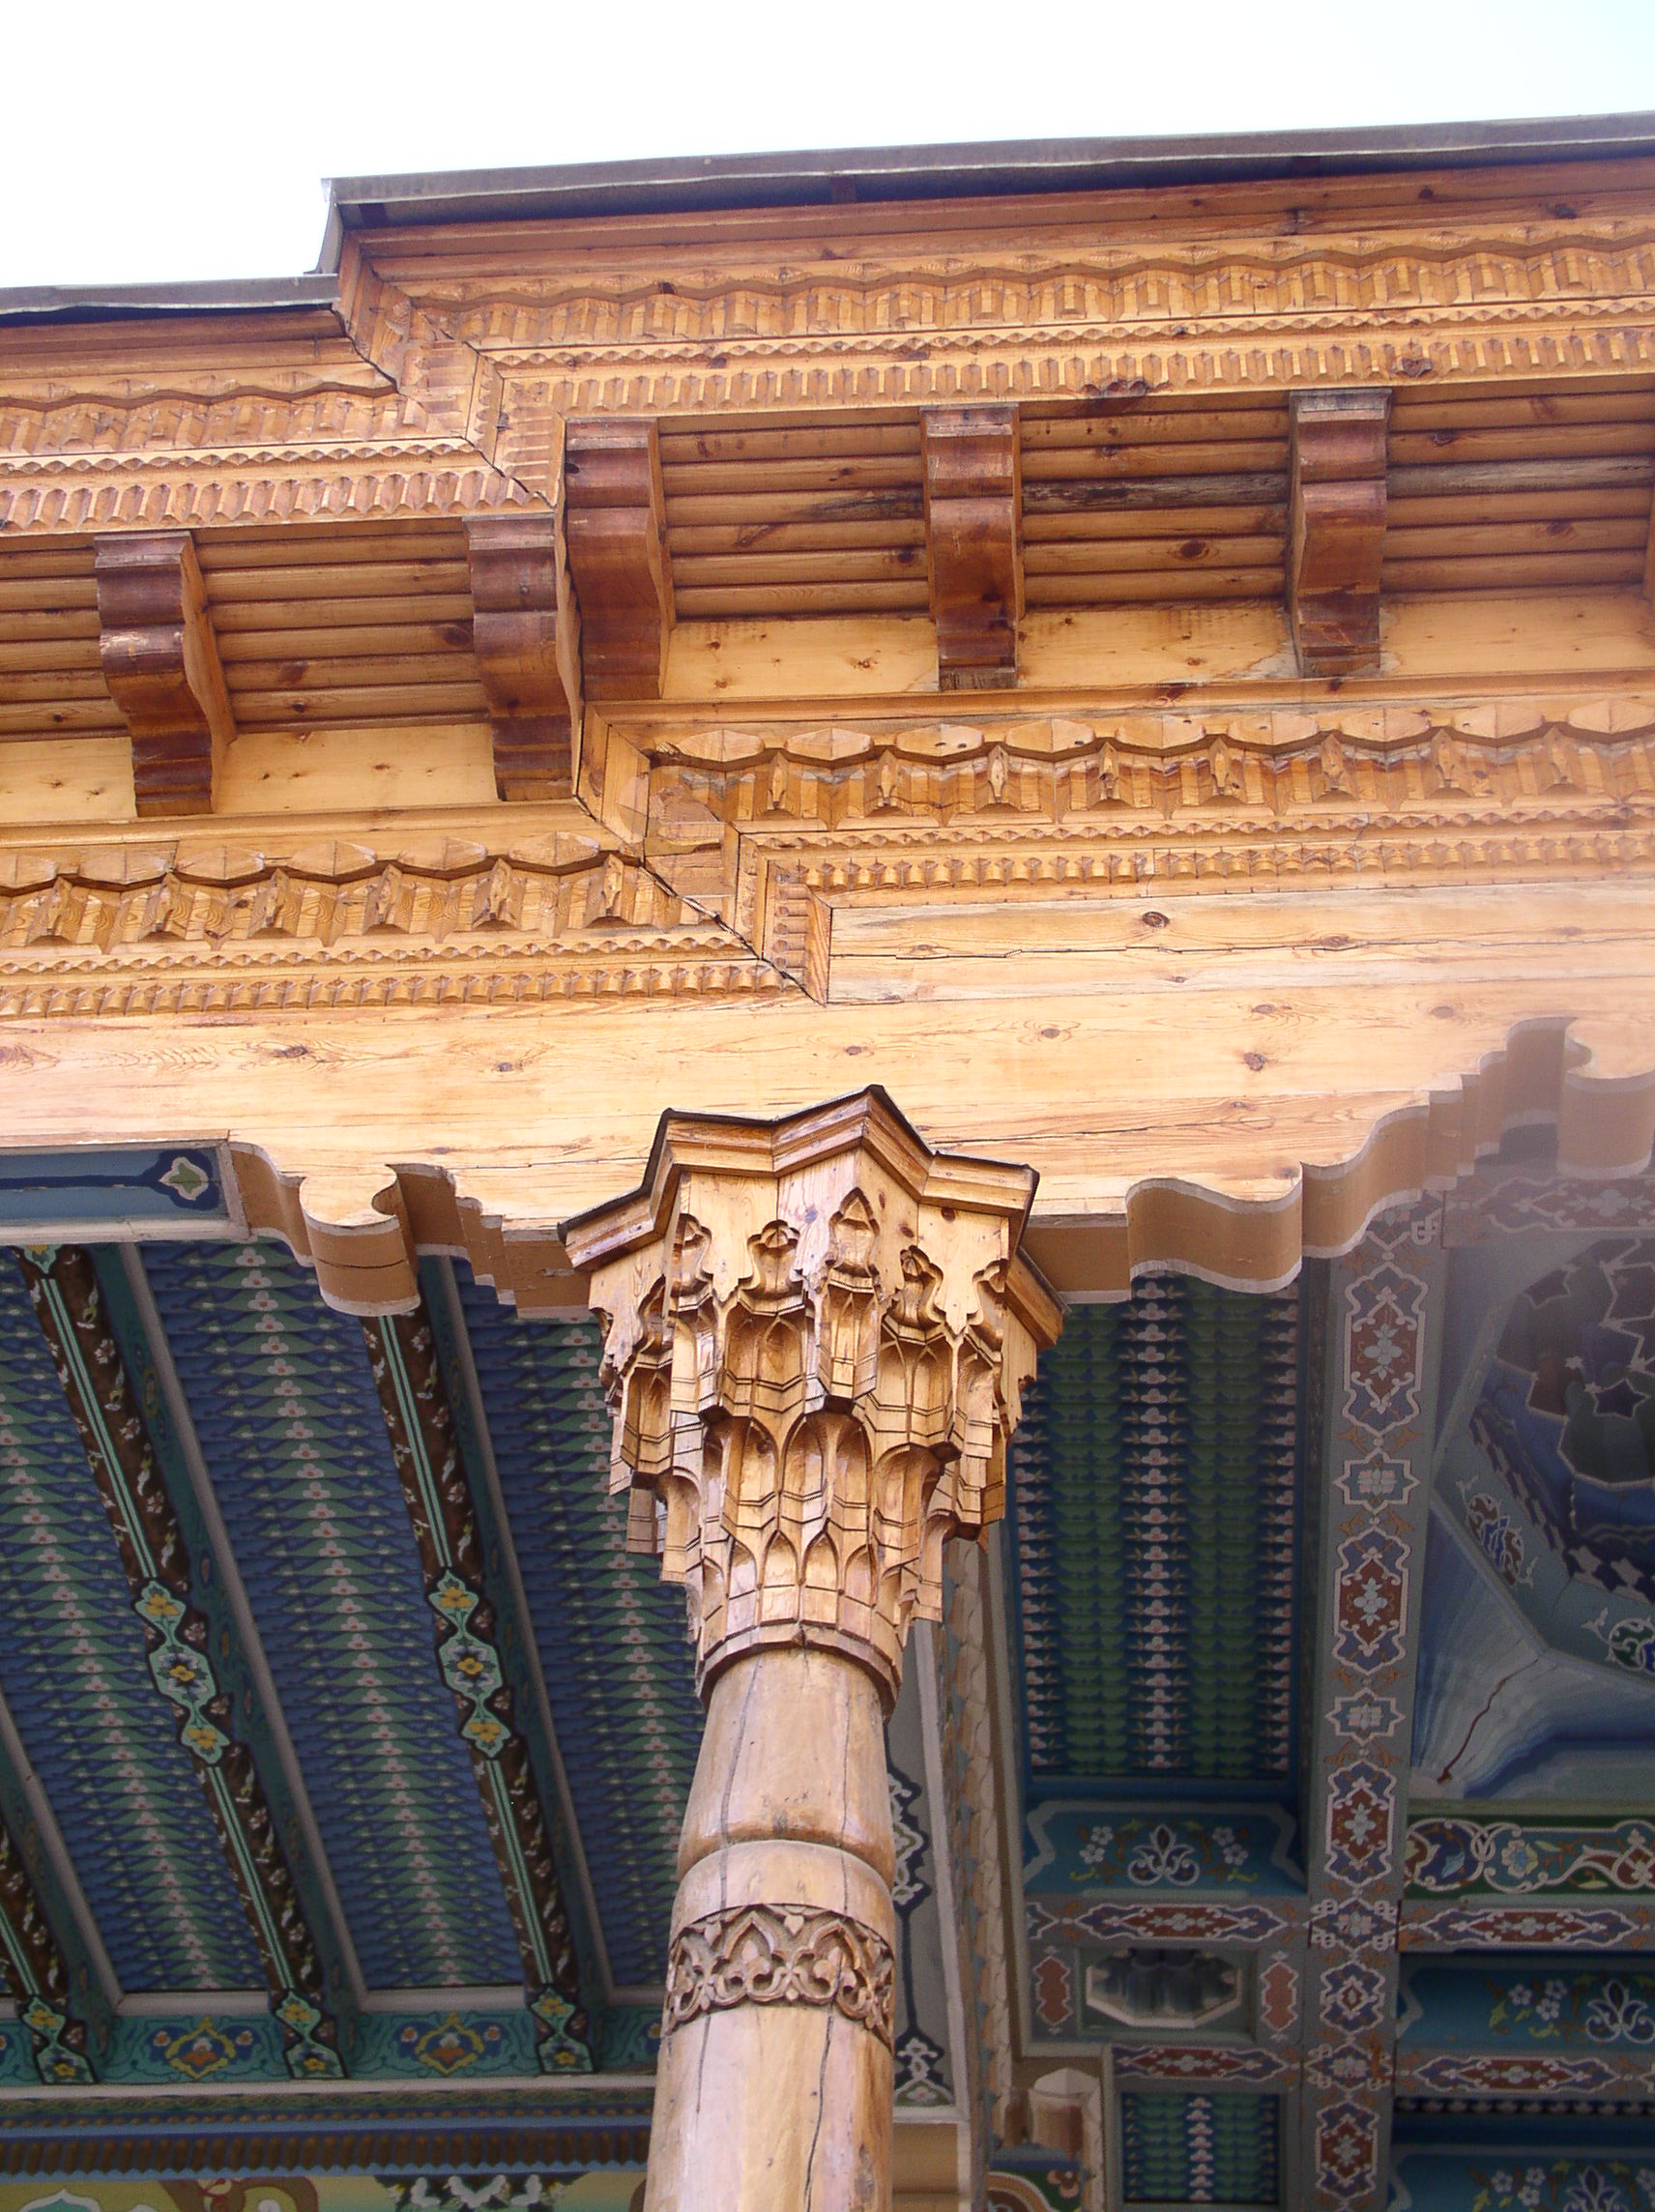 Les chapiteaux et les colonnes sont régis par les ordres architecturaux. © Alaexis, CC BY-SA 3.0, Wikimedia Commons